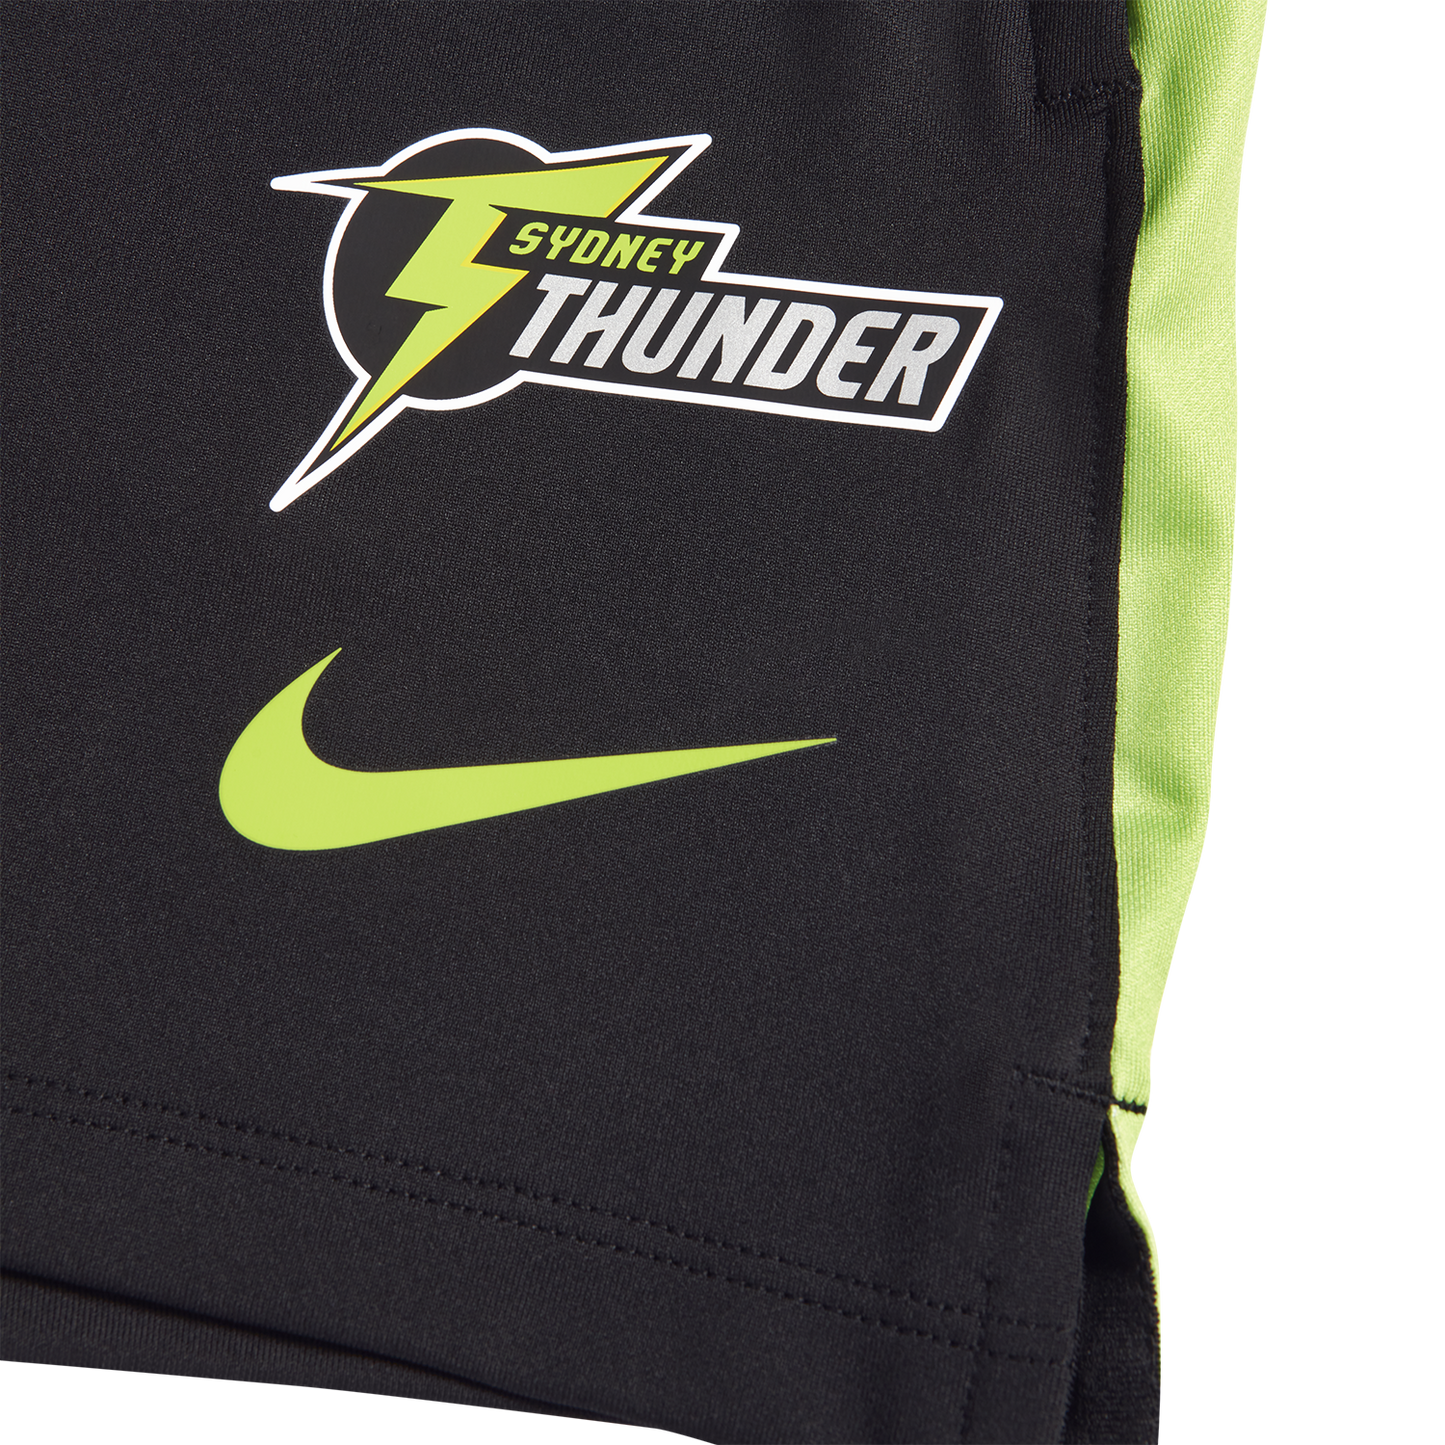 Sydney Thunder Womens Nike Training Short